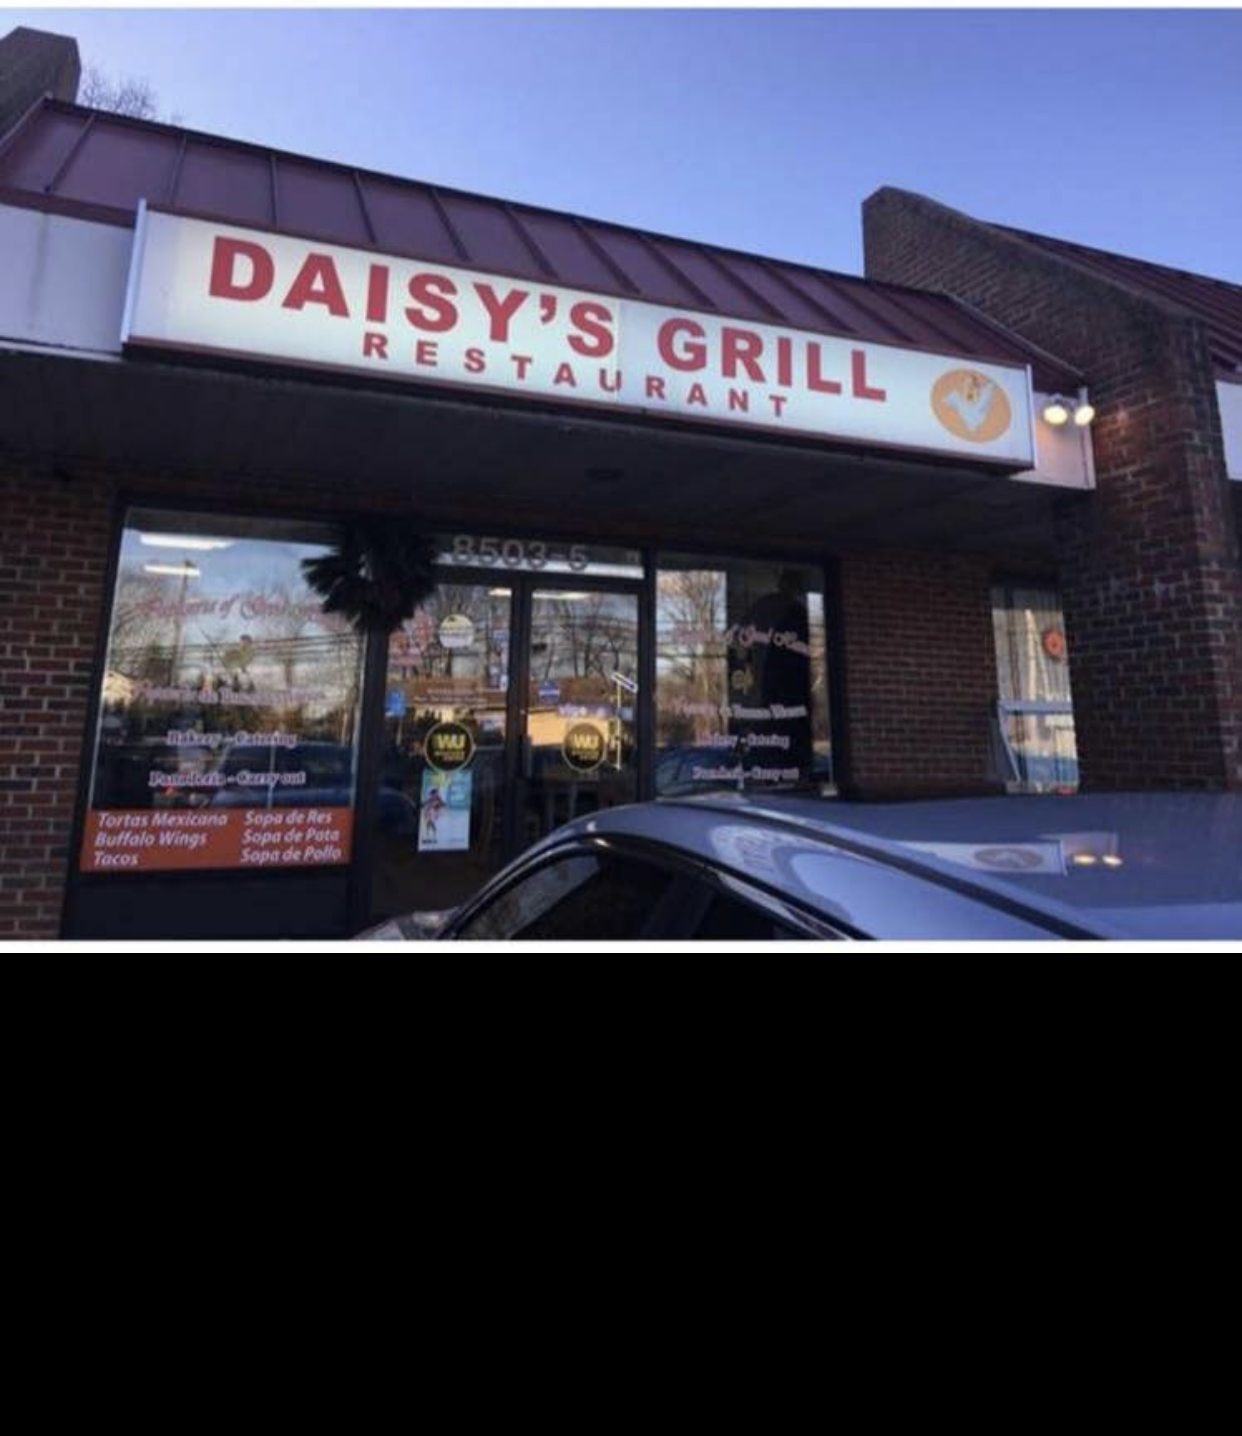 Daisy's grill Restaurant